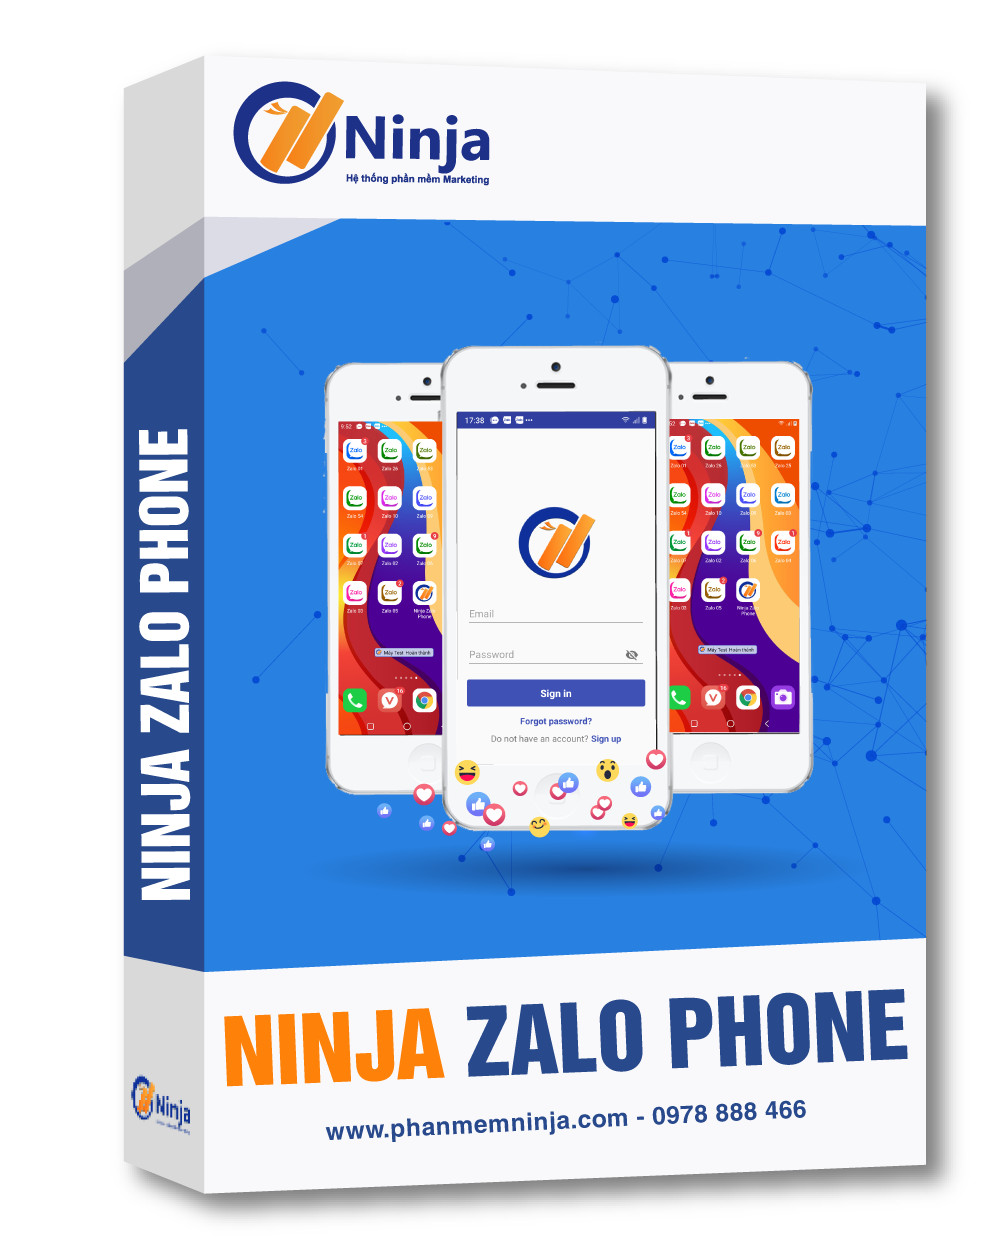 Phần mềm nuôi nick Zalo trên điện thoại - Ninja Zalo Phone